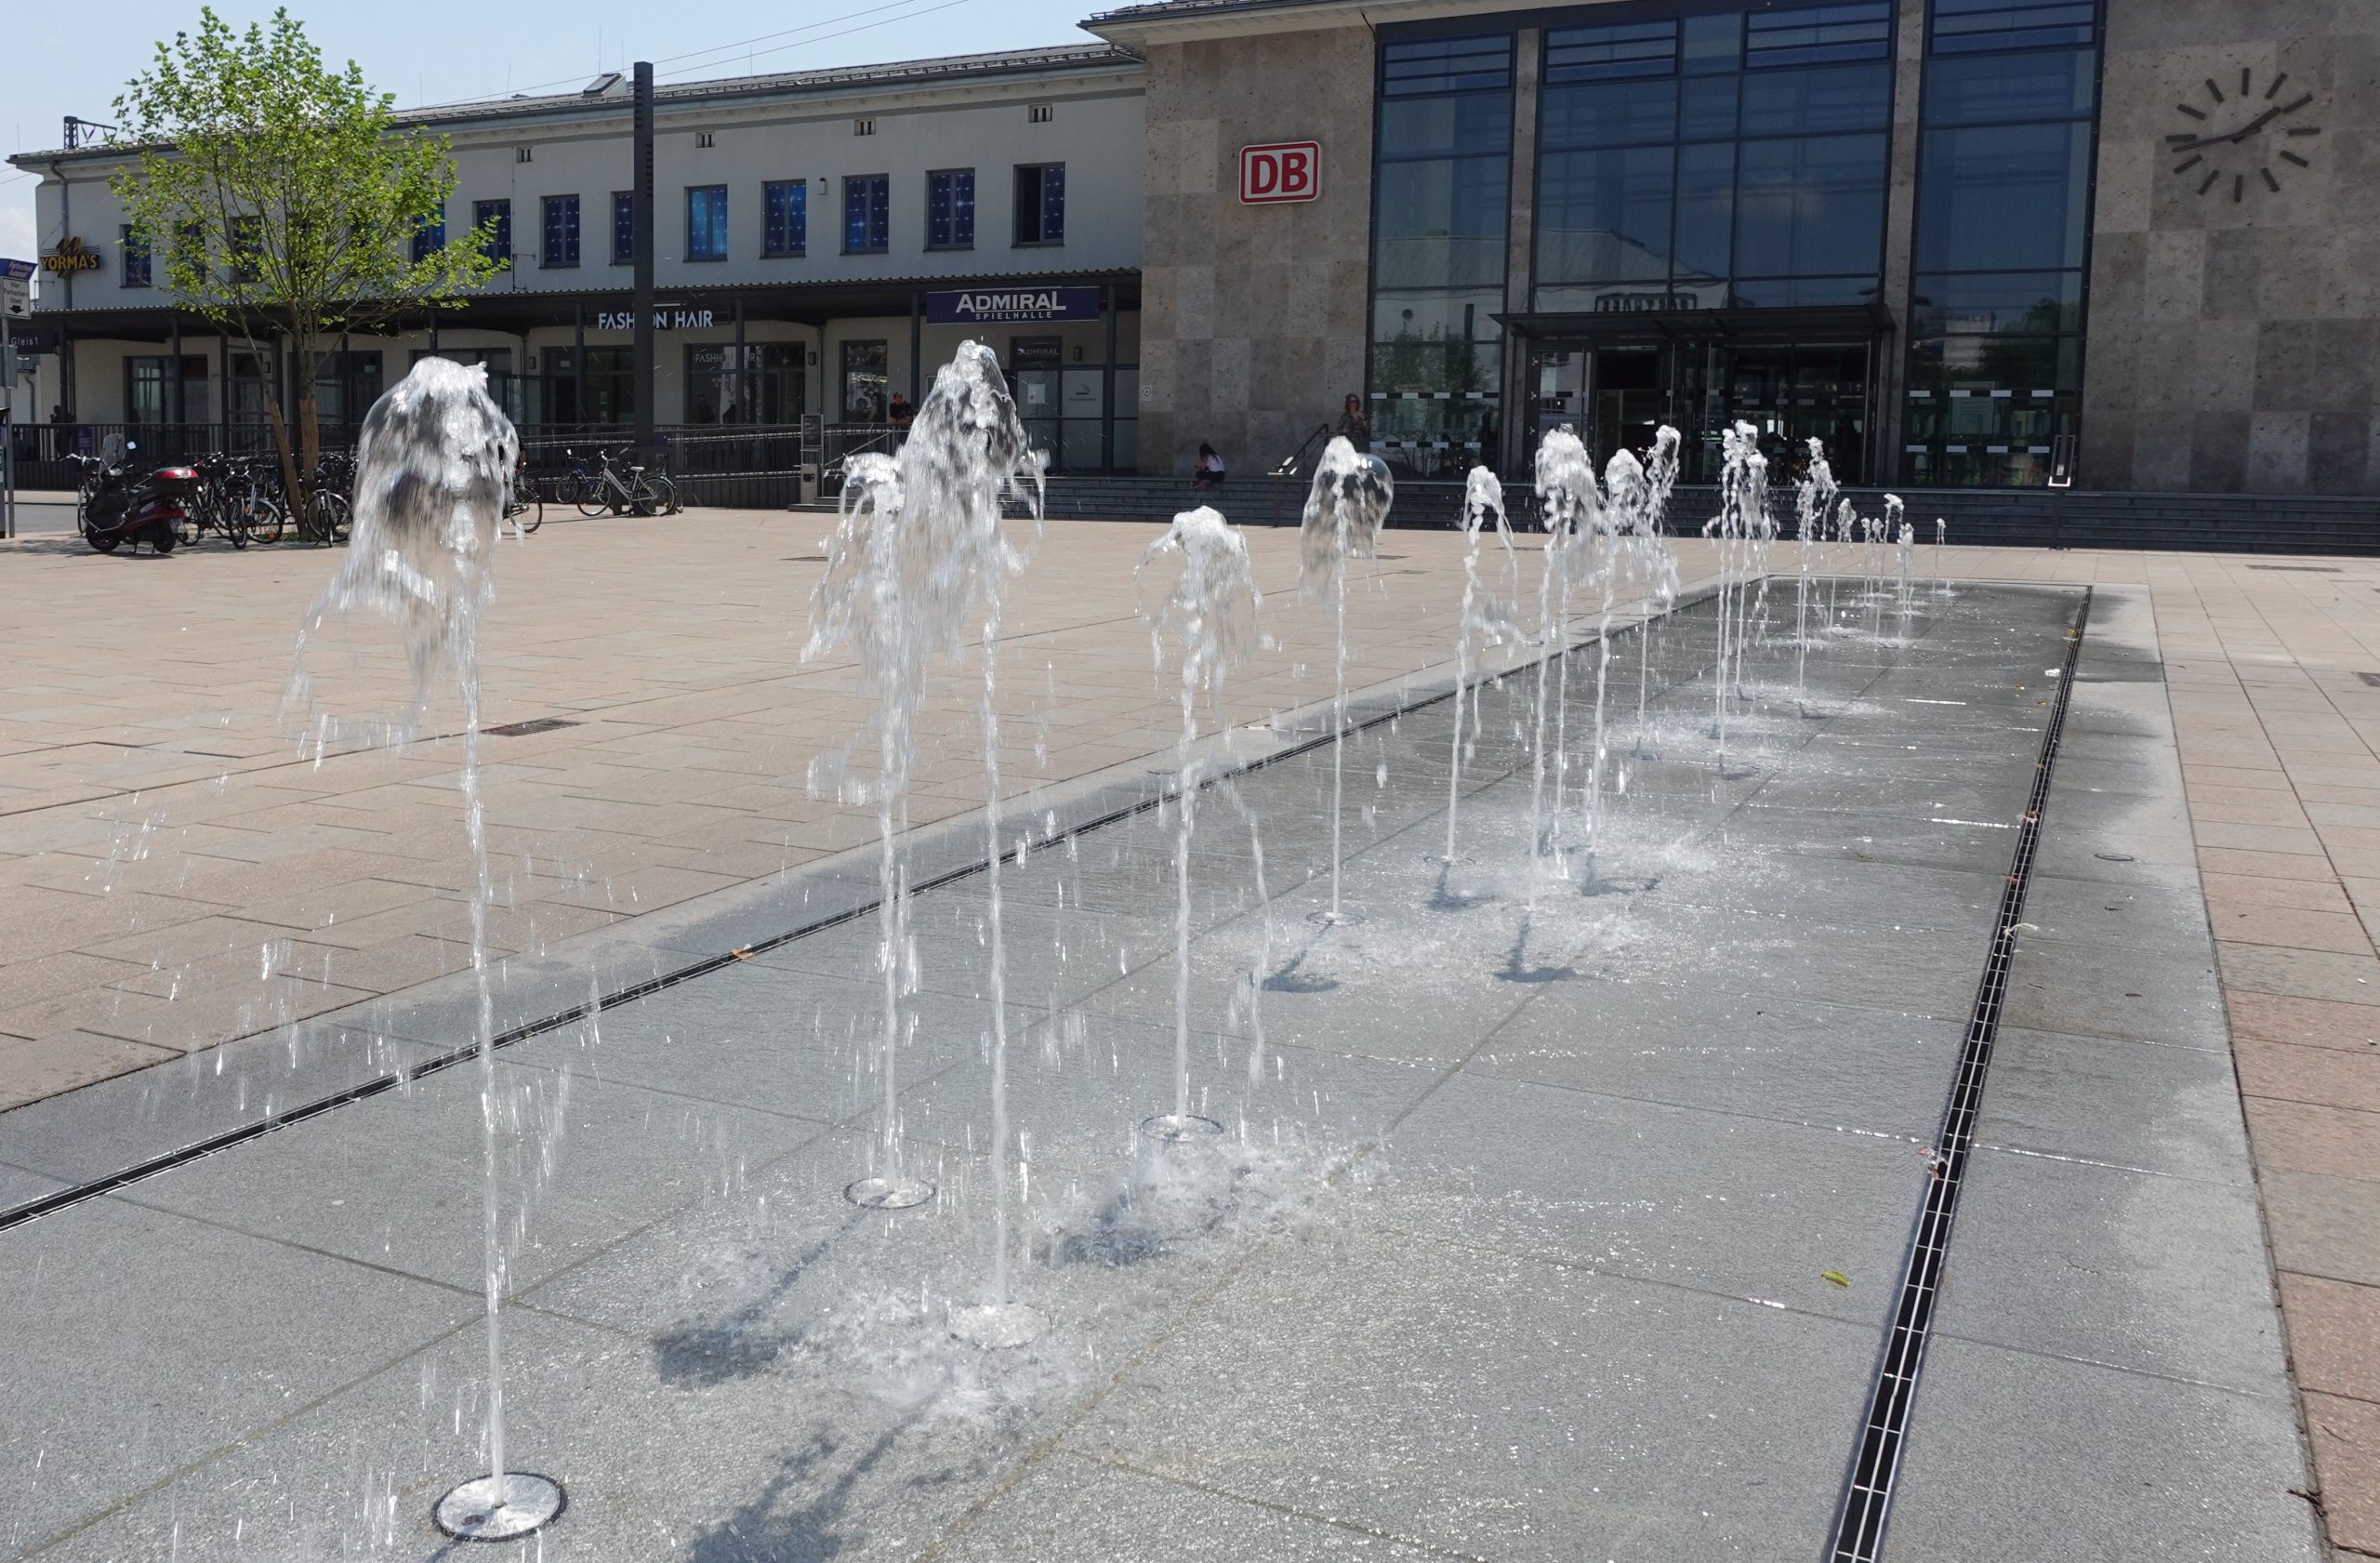 Begehbarer Brunnen auf dem Bahnhofsvorplatz in Rosenheim. Foto: Innpuls.me